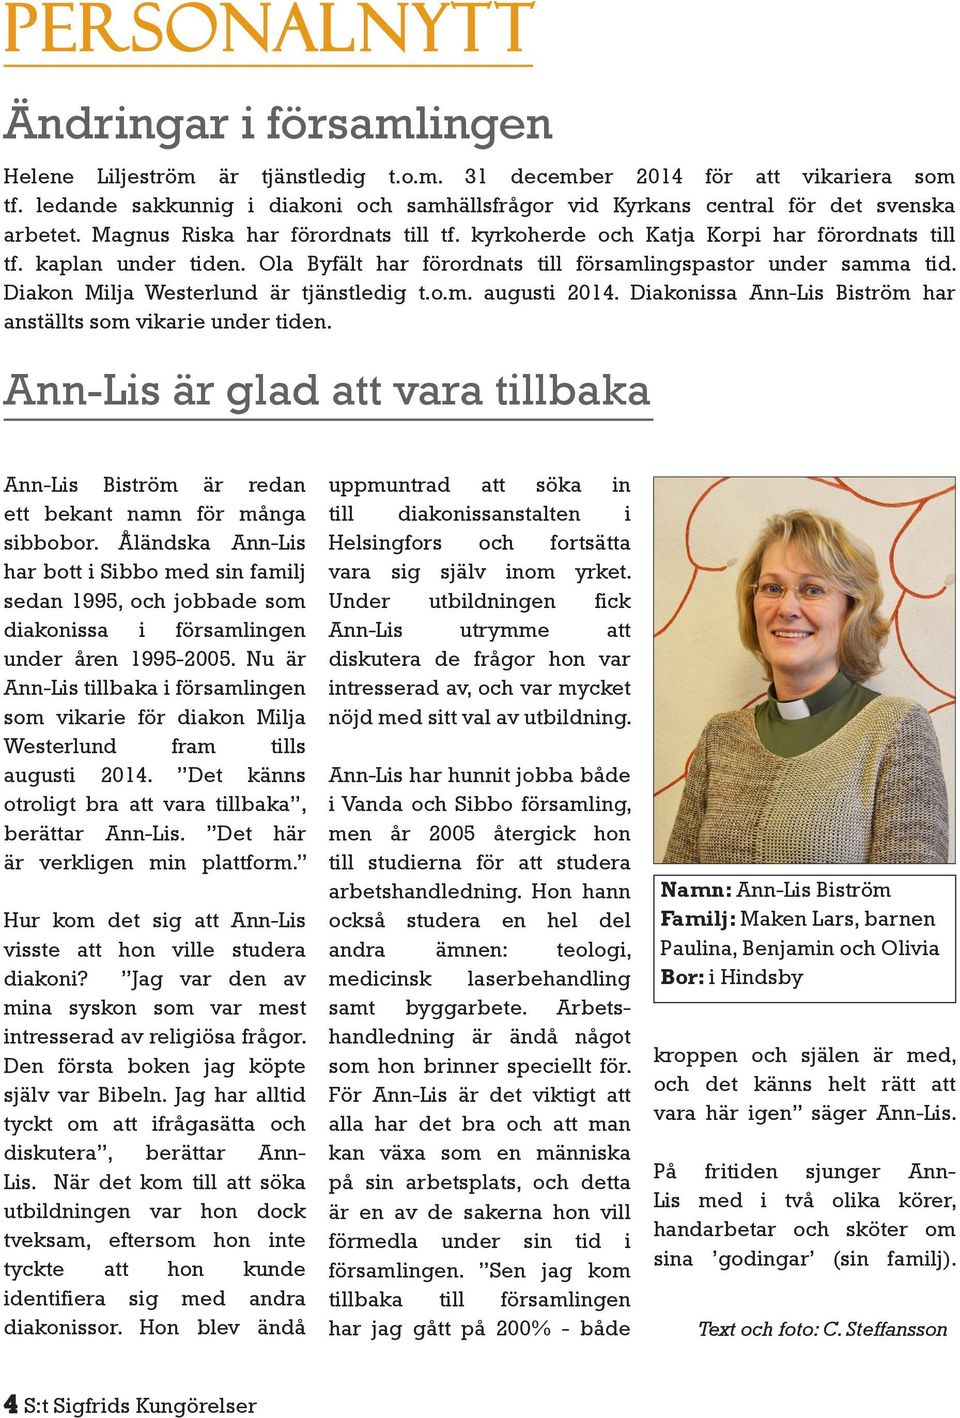 Ola Byfält har förordnats till församlingspastor under samma tid. Diakon Milja Westerlund är tjänstledig t.o.m. augusti 2014. Diakonissa Ann-Lis Biström har anställts som vikarie under tiden.